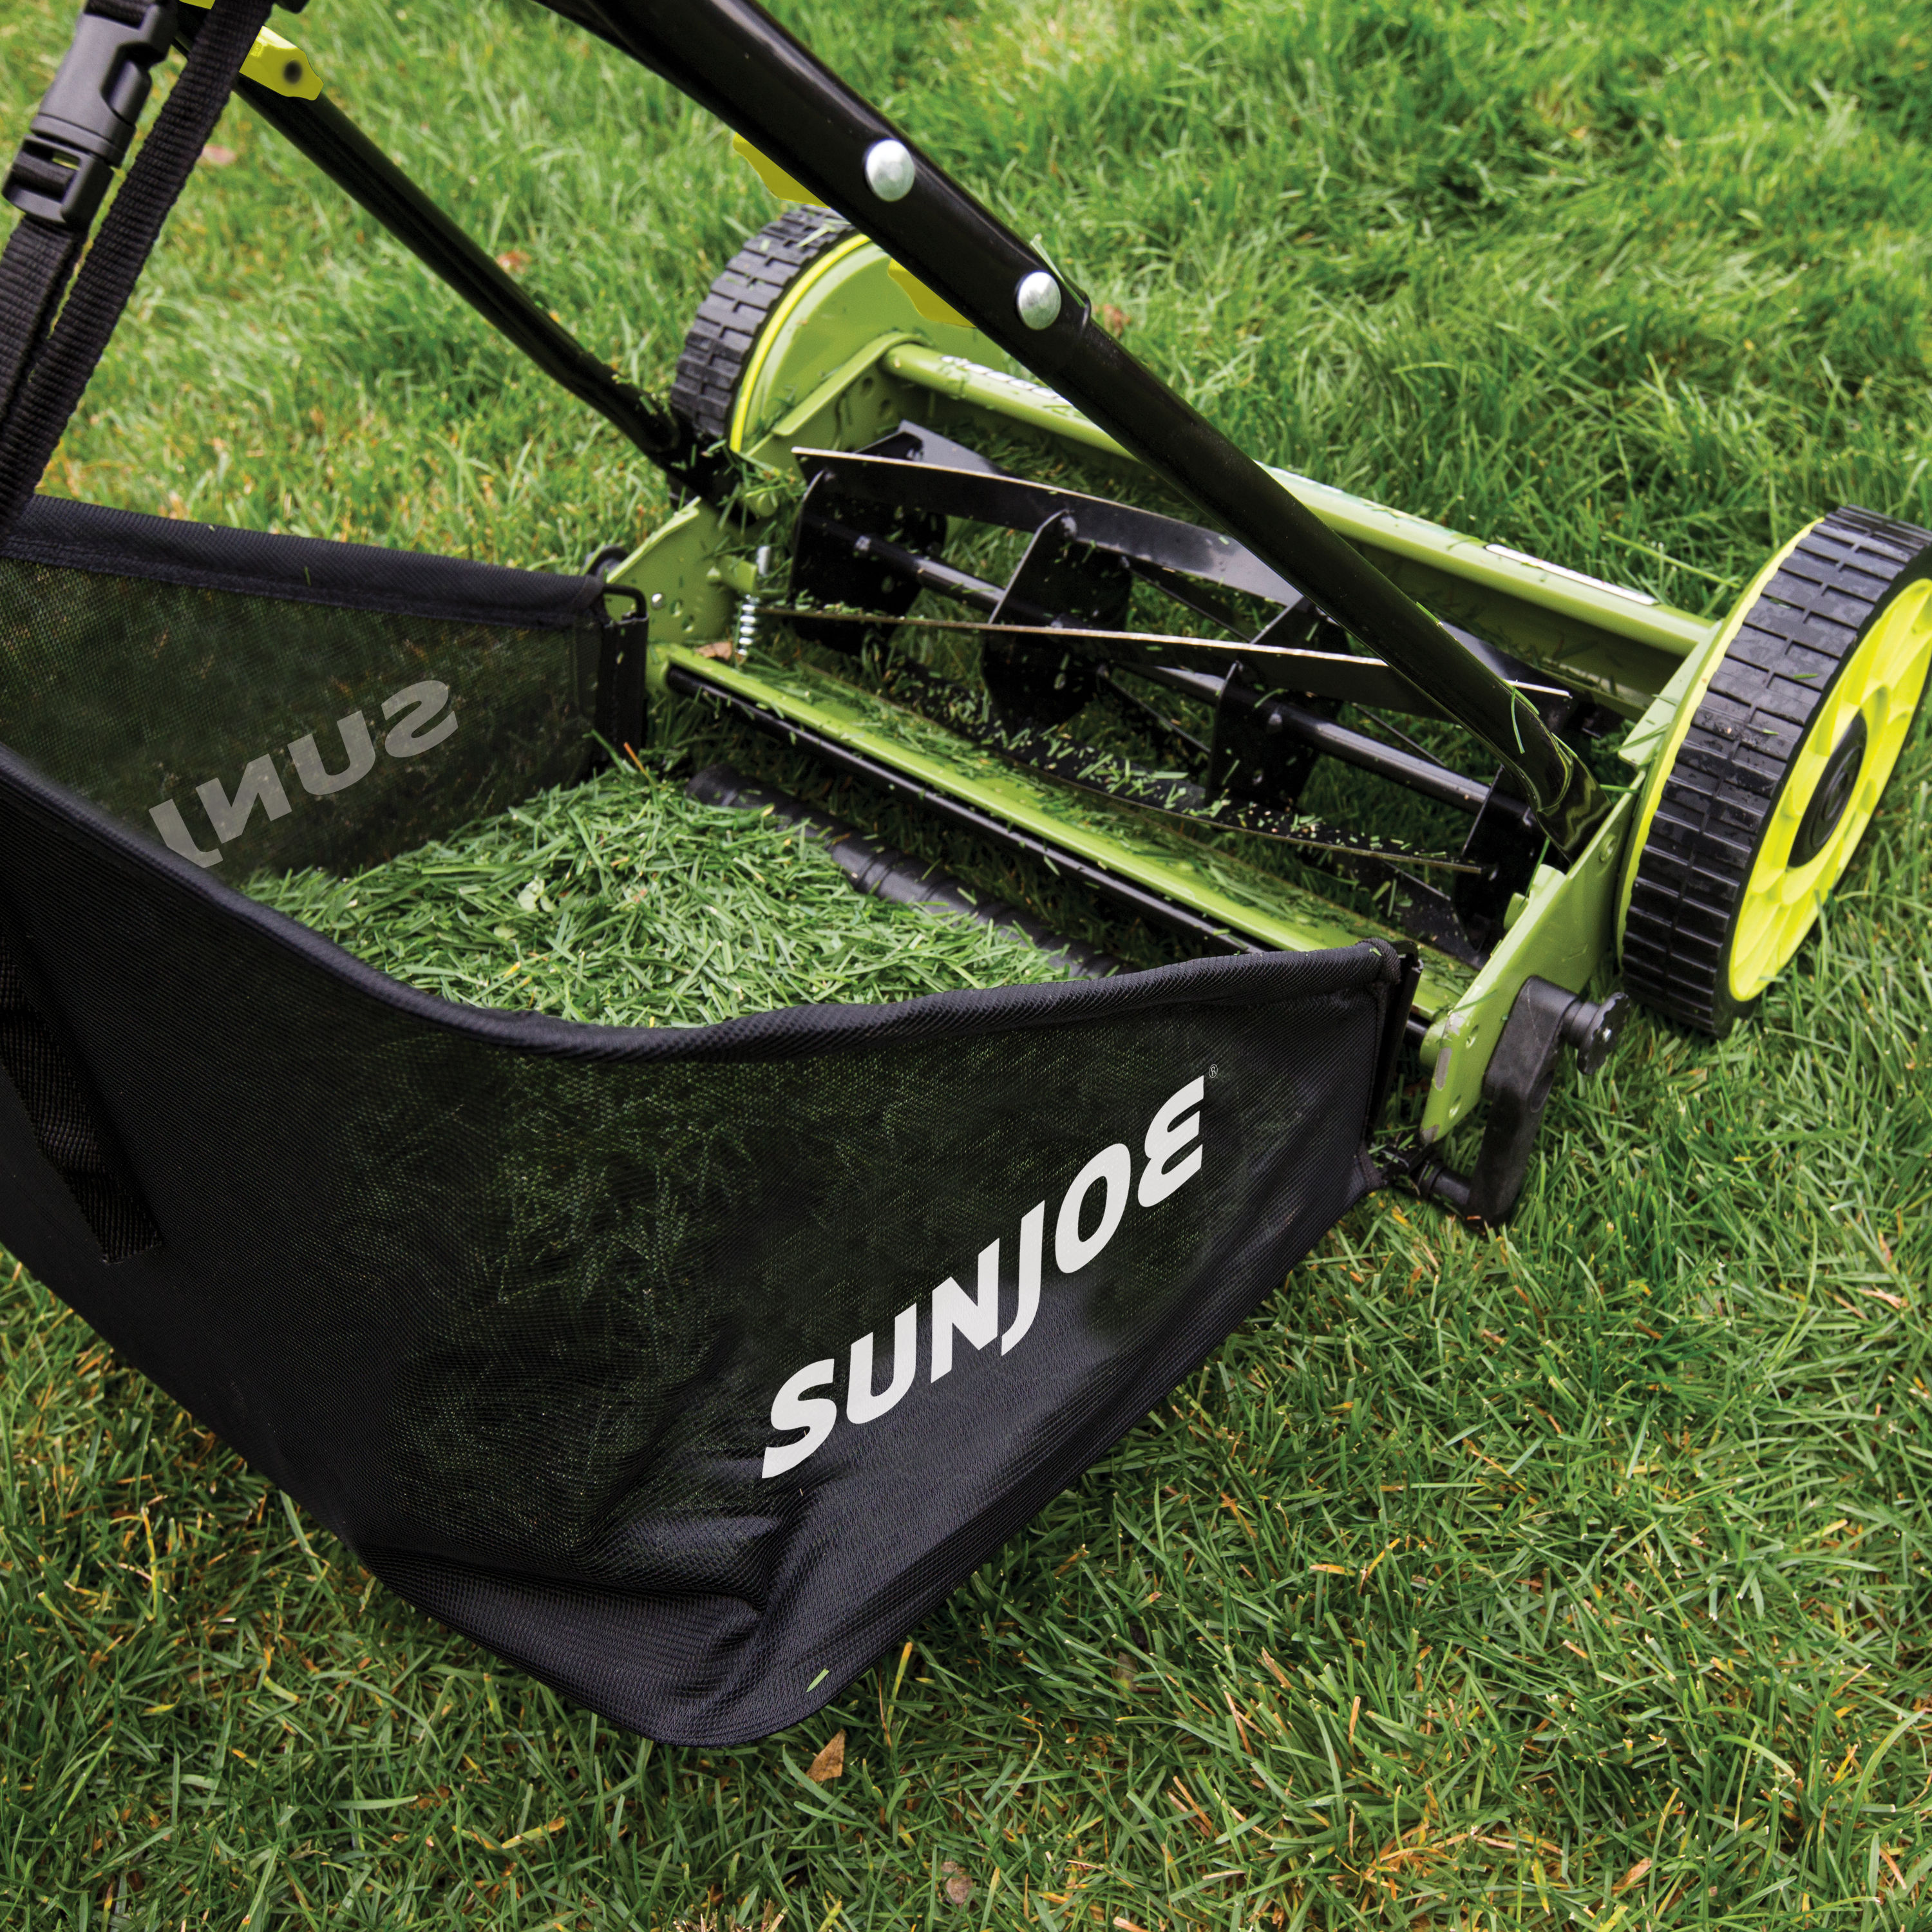 Sun Joe 16-in 4 Reel Lawn Mower with bagger in the Reel Lawn